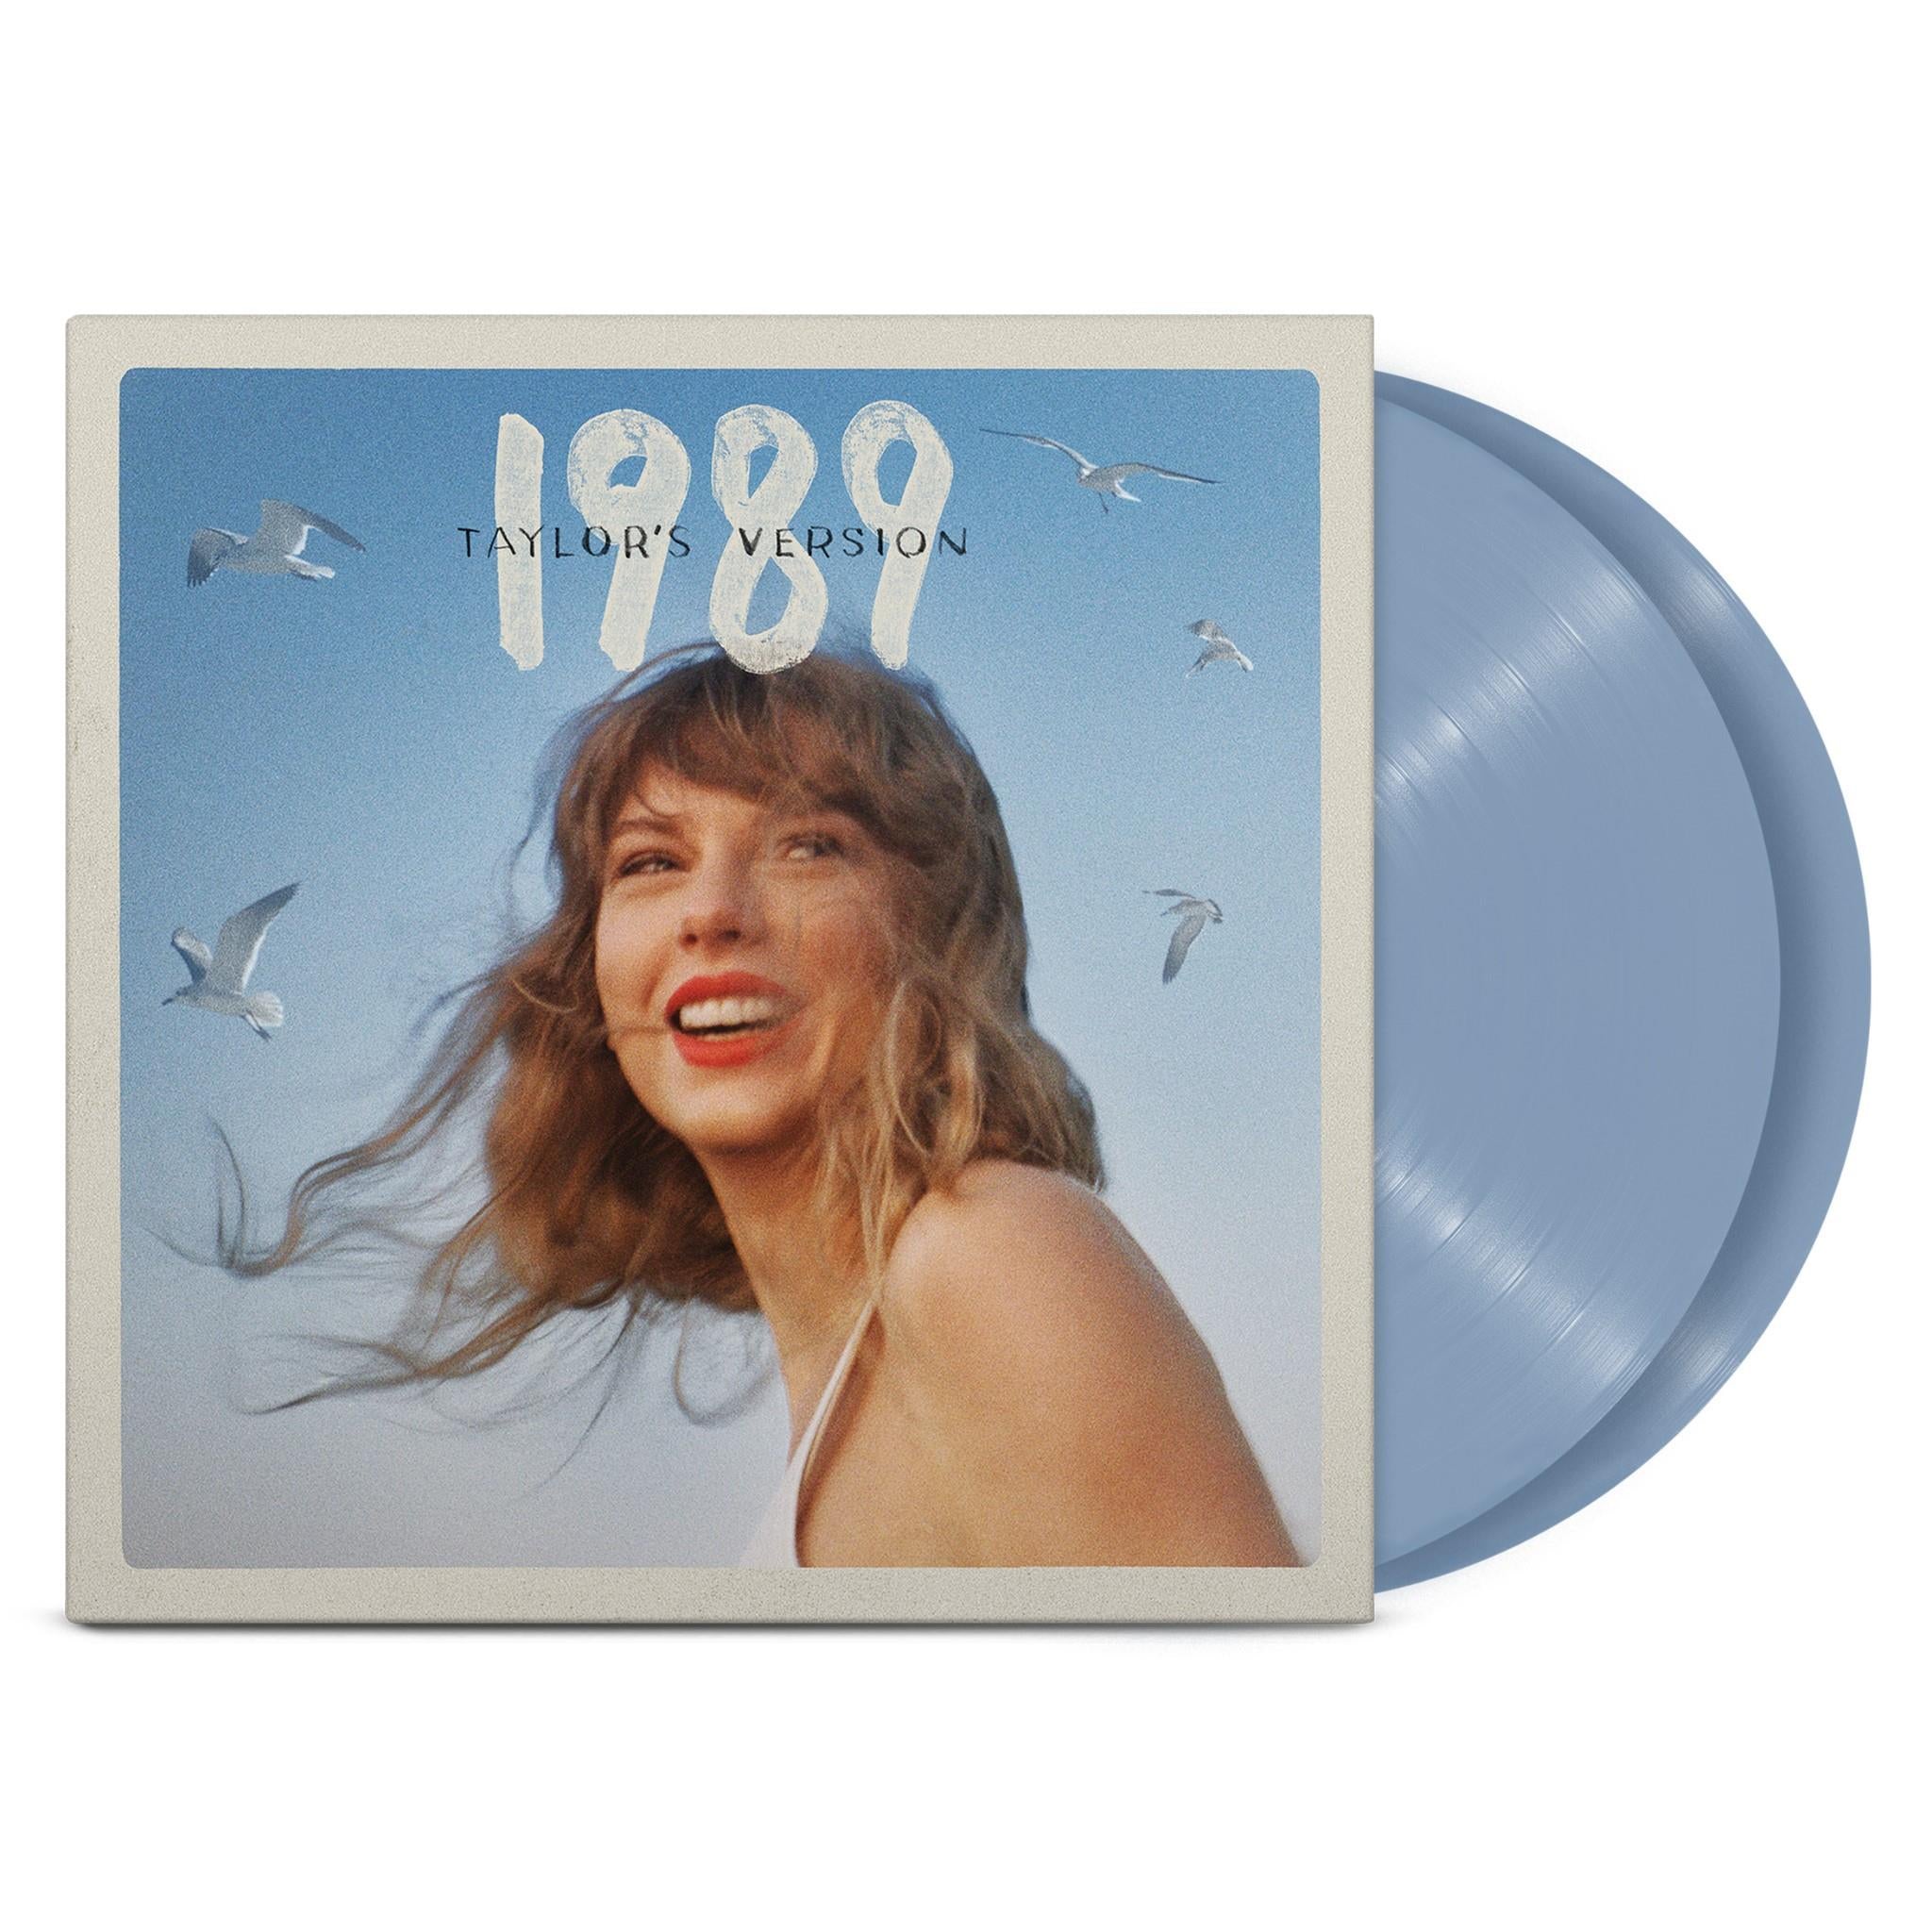 1989 (taylor's version) (crystal skies blue vinyl)